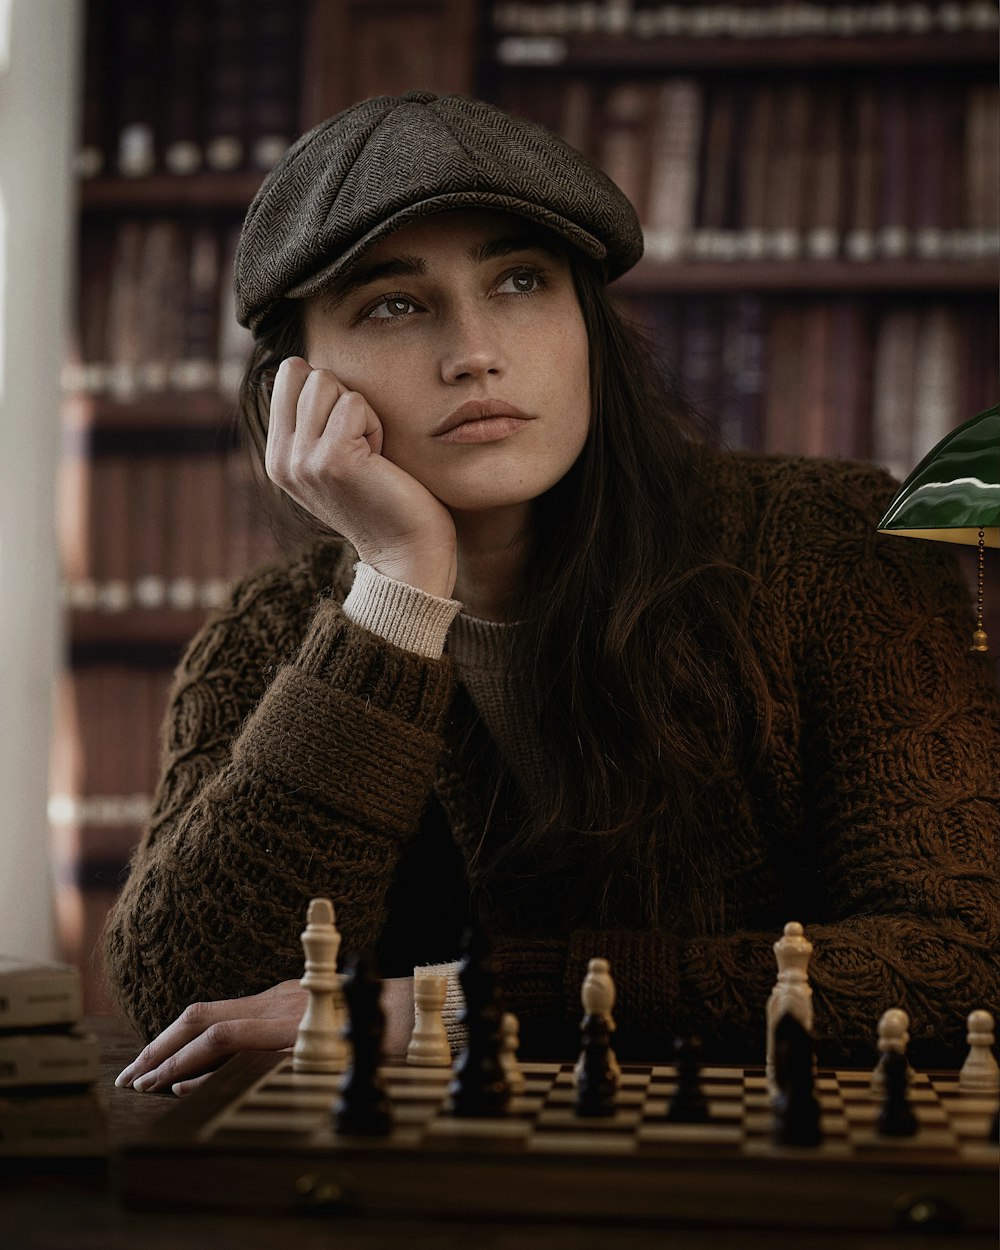 Una mujer sentada en una mesa con un tablero de ajedrez